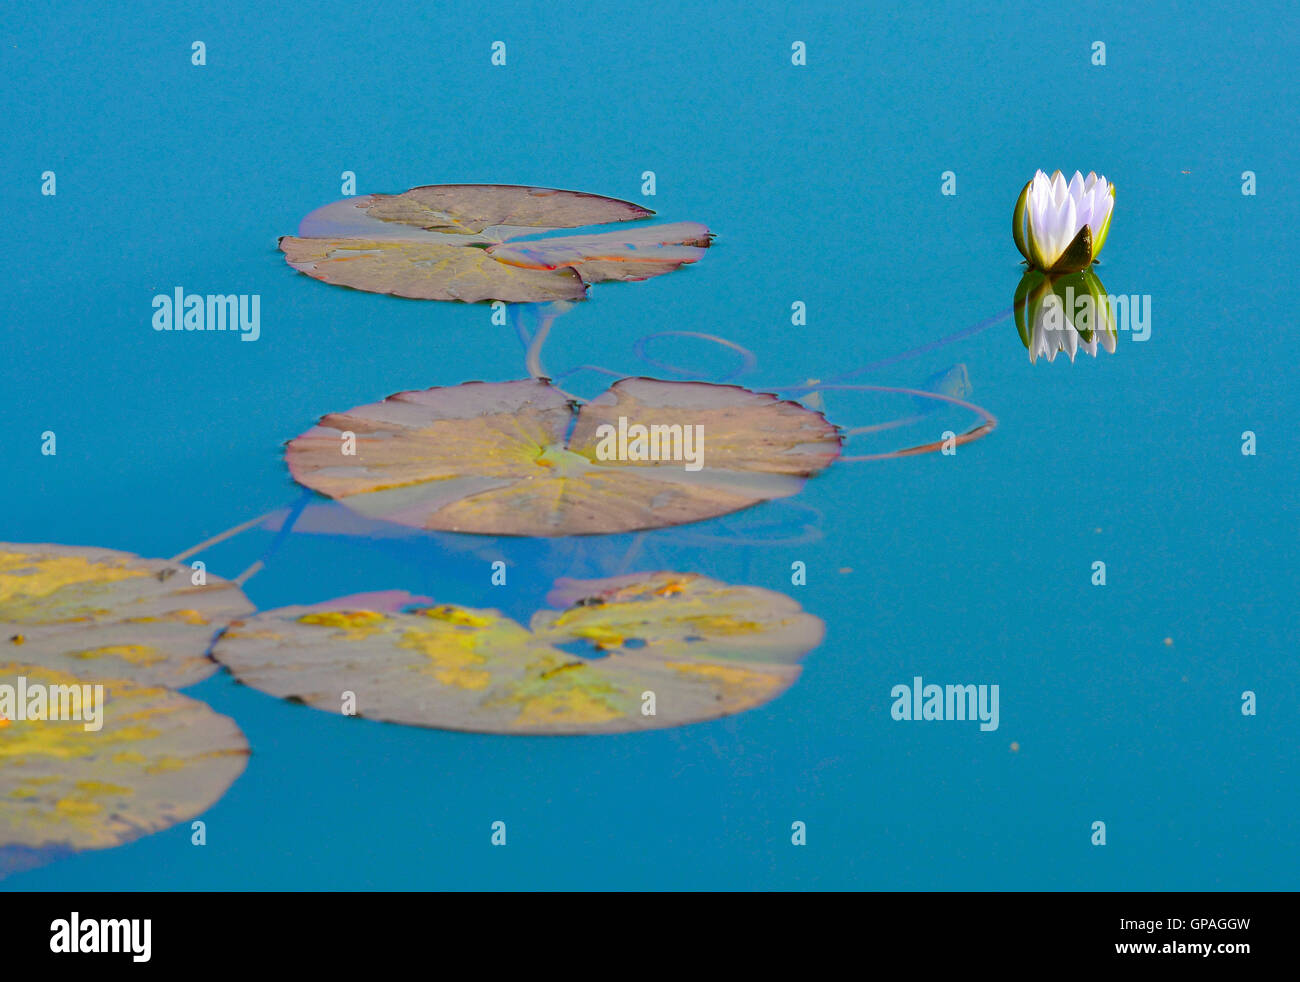 Seerose mit großen, grünen Blätter auf Himmelblau Teich mit starken Gegenwartsgesellschaft. Schöne ruhige Wasser spiegelt den Himmel und Lilie Stockfoto